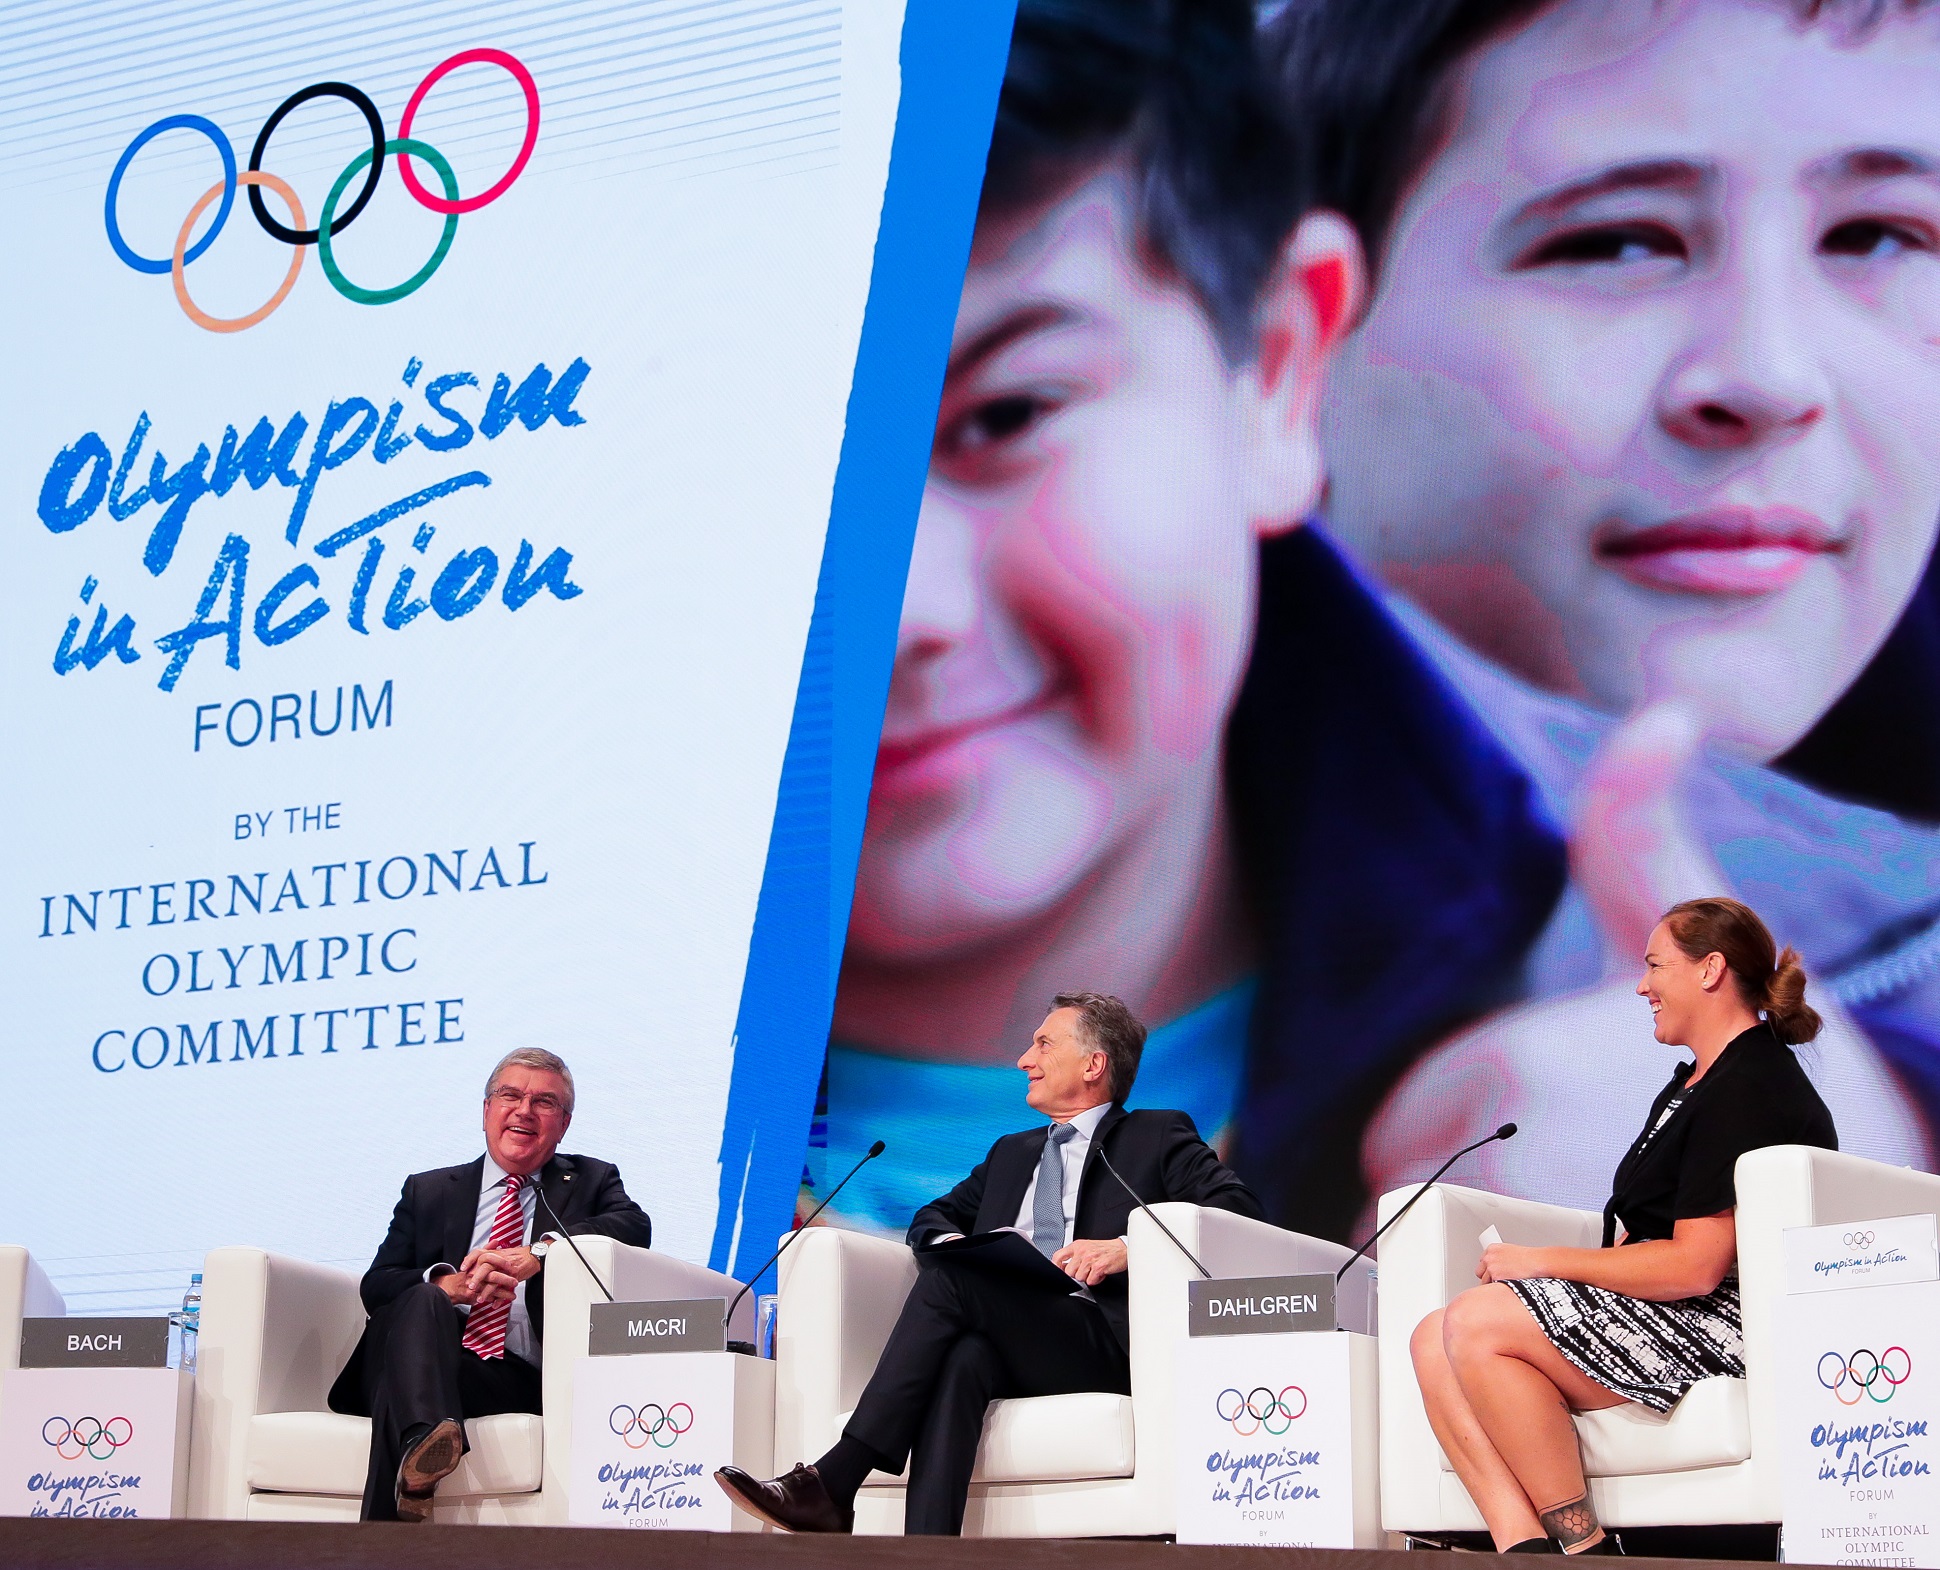 El presidente Macri participó de la apertura del foro Olympism in Action